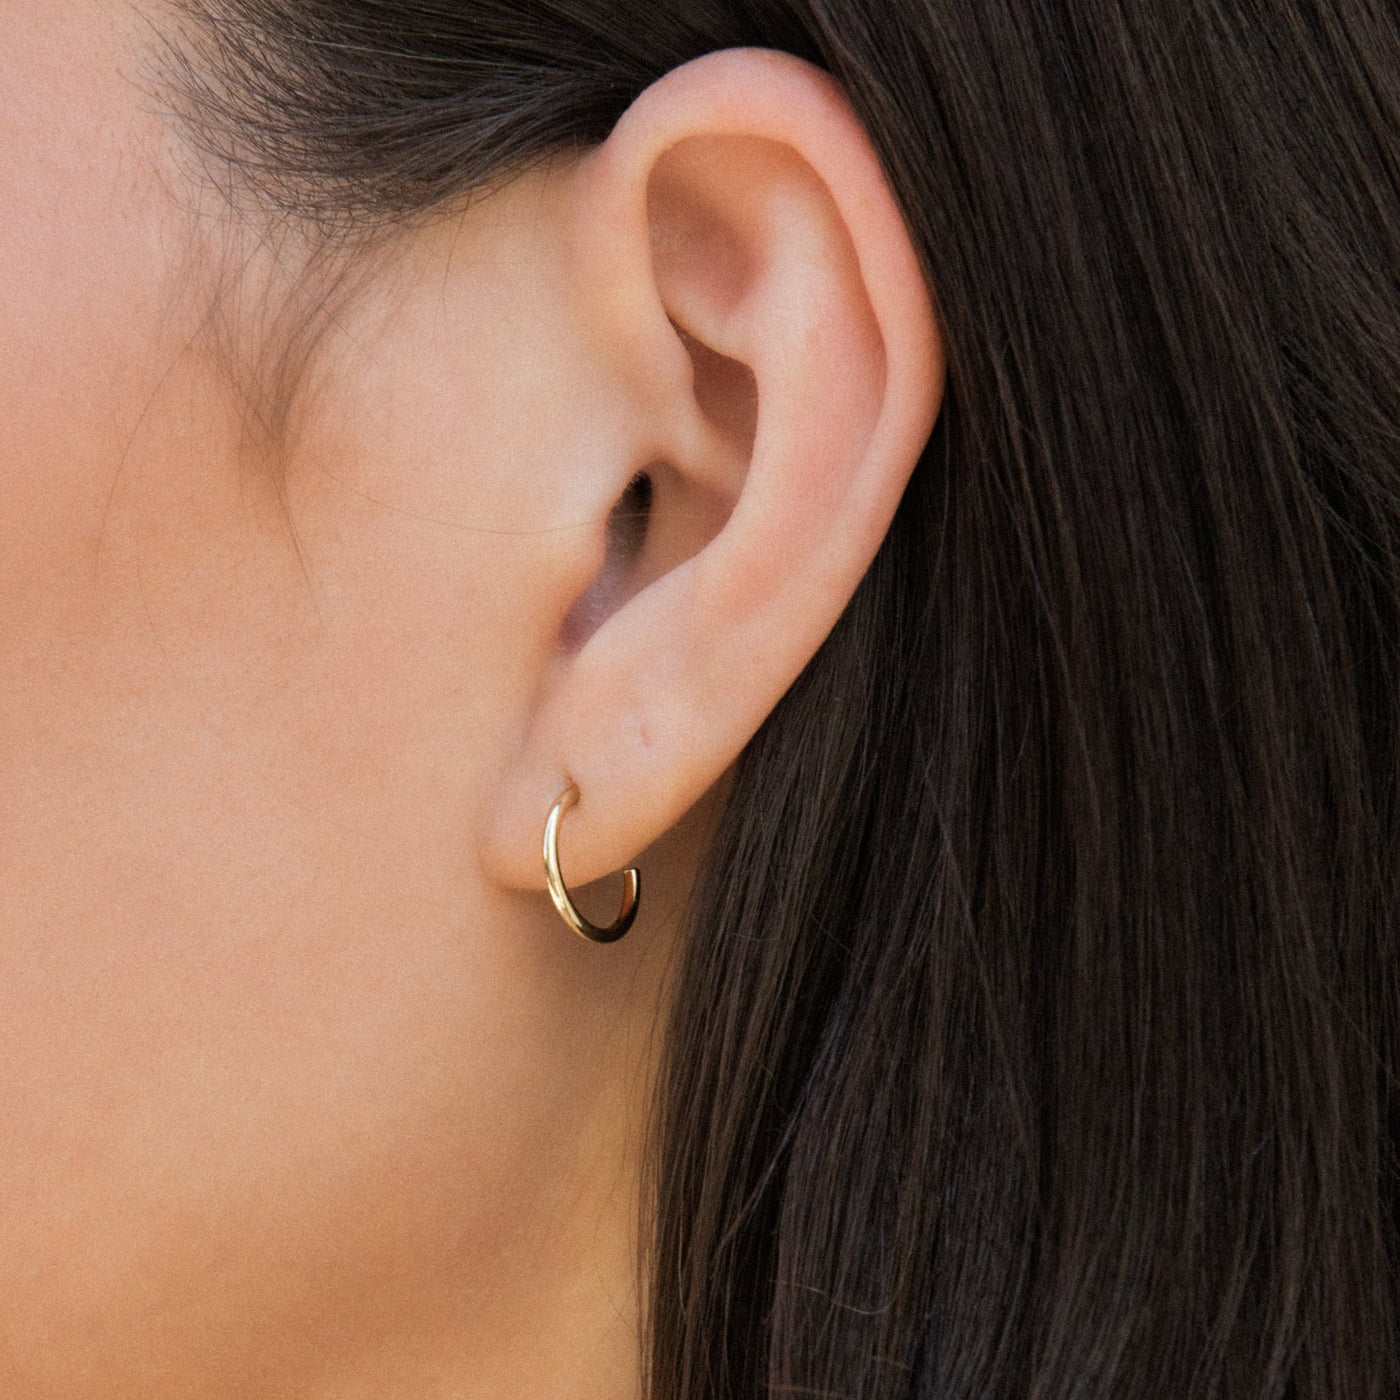 Small (12mm) Open Hoop Earrings